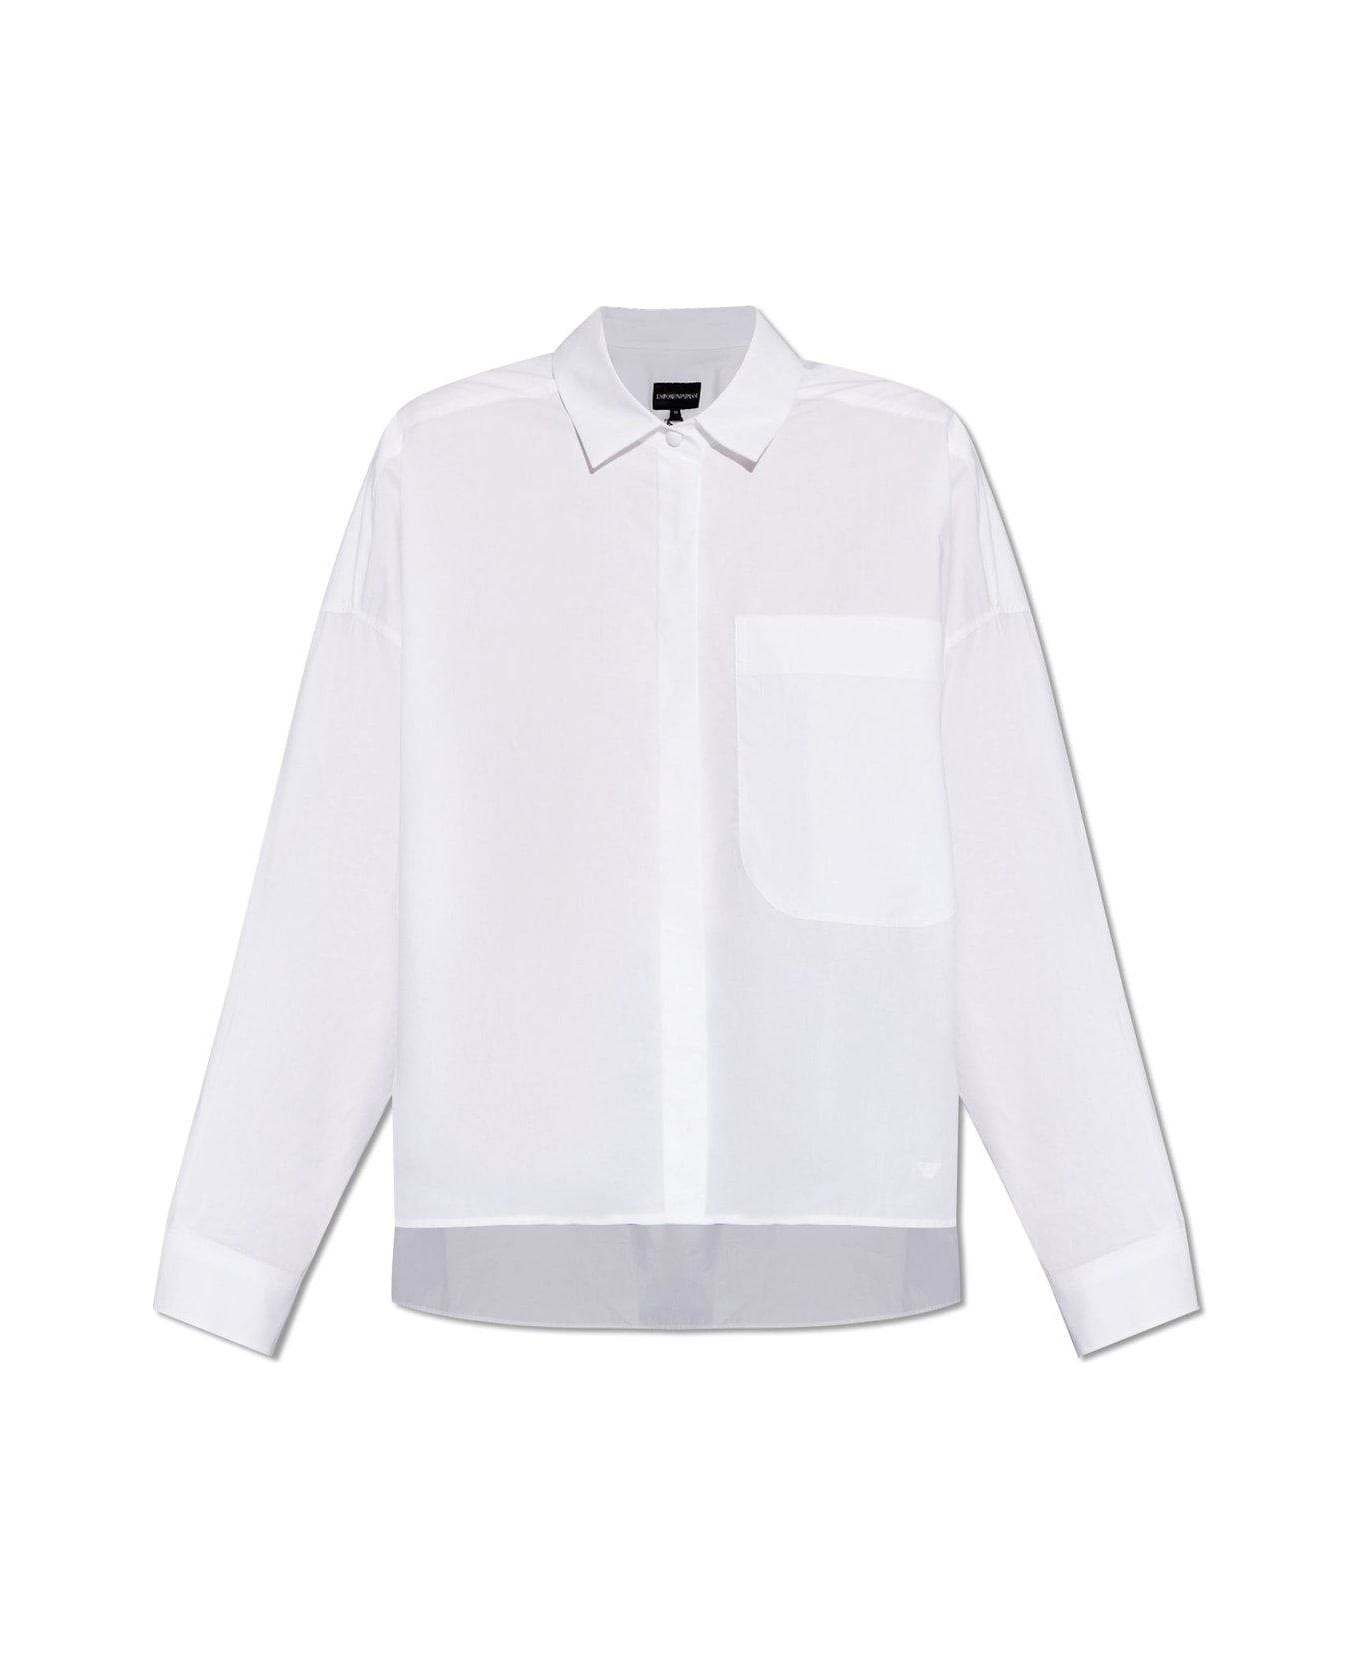 Emporio Armani Shirt With Pocket - White